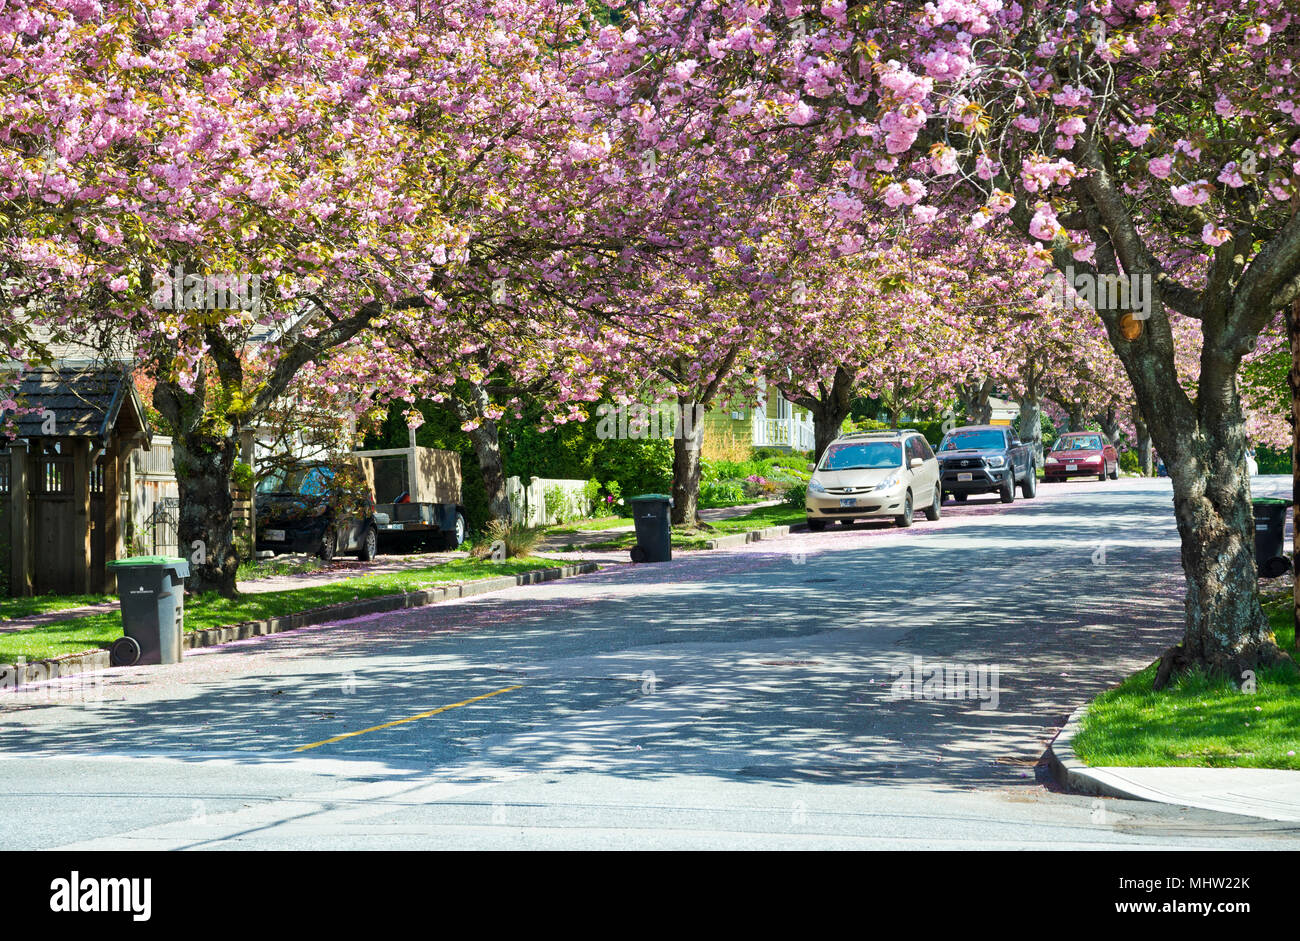 Via alberata con ornamentali rosa fiori di ciliegio a New Westminster, BC, Canada. Prunus serrulata Kanzan cherry blossom alberi.(Metro Vancouver} Foto Stock